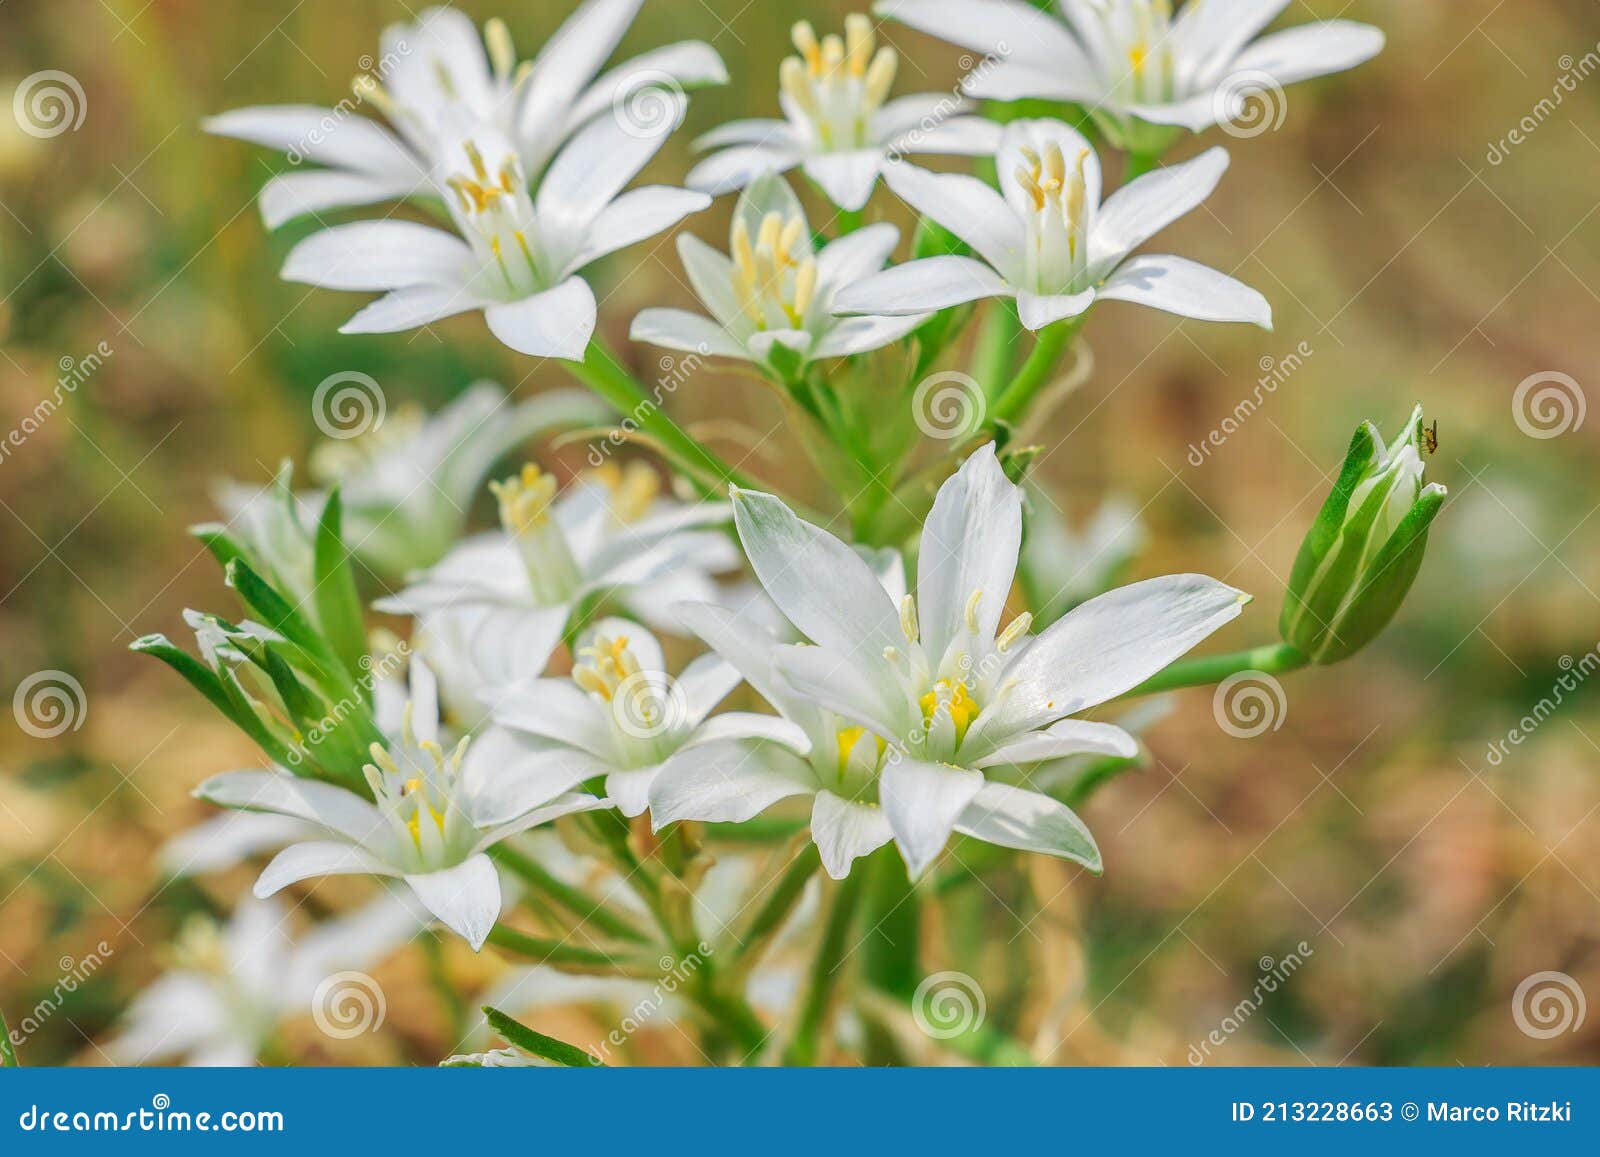 Fleurs Blanches De La Plante D'étoile De Lait Ombellée Image stock - Image  du saison, beau: 213228663